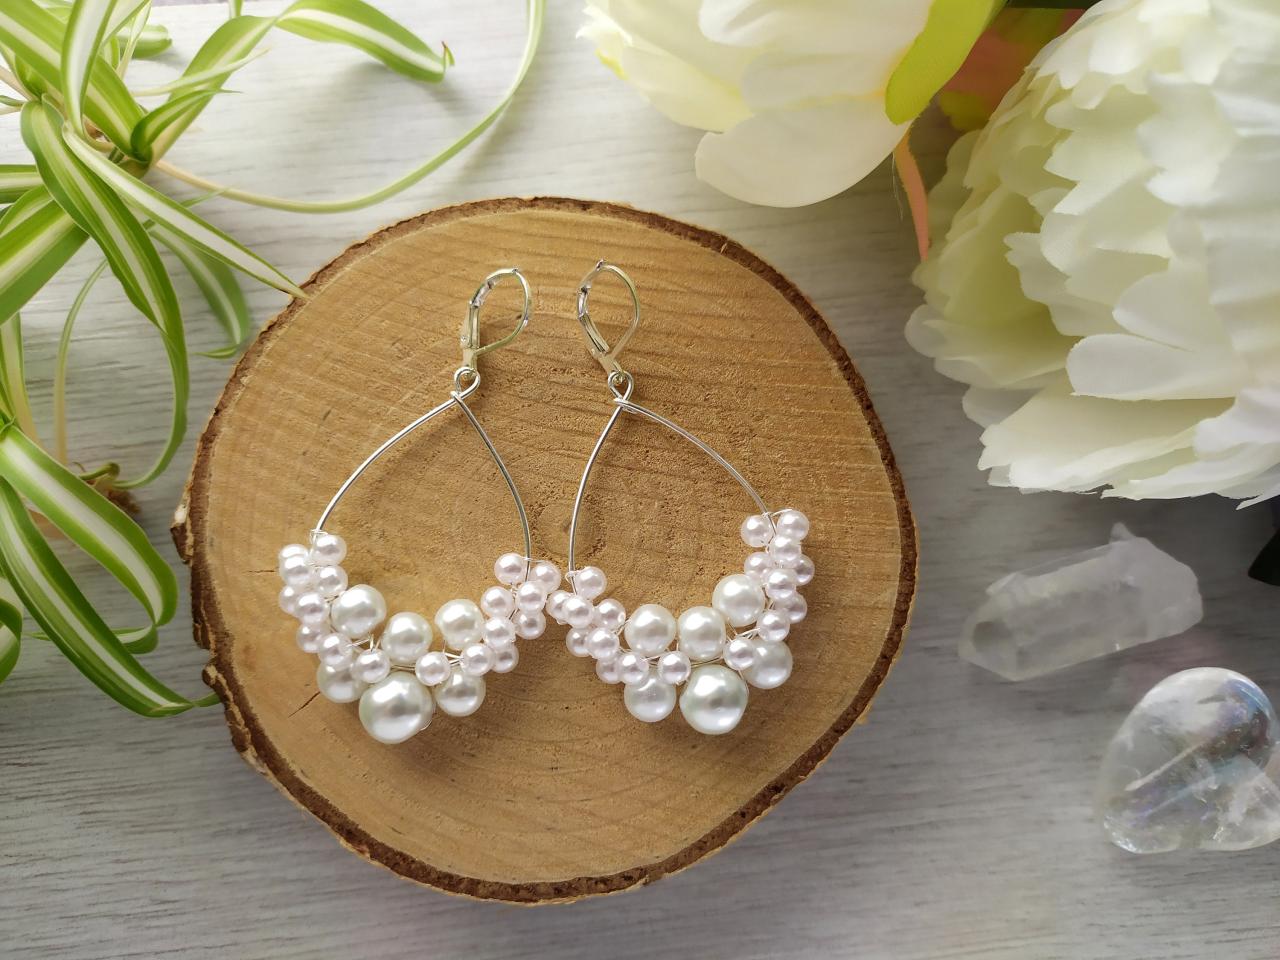 Pearl Wedding Earrings, 925 Sterling Silver Earrings, White Pearl Earrings, Bridal Earrings, Earrings For Bride, White Chandelier Earrings